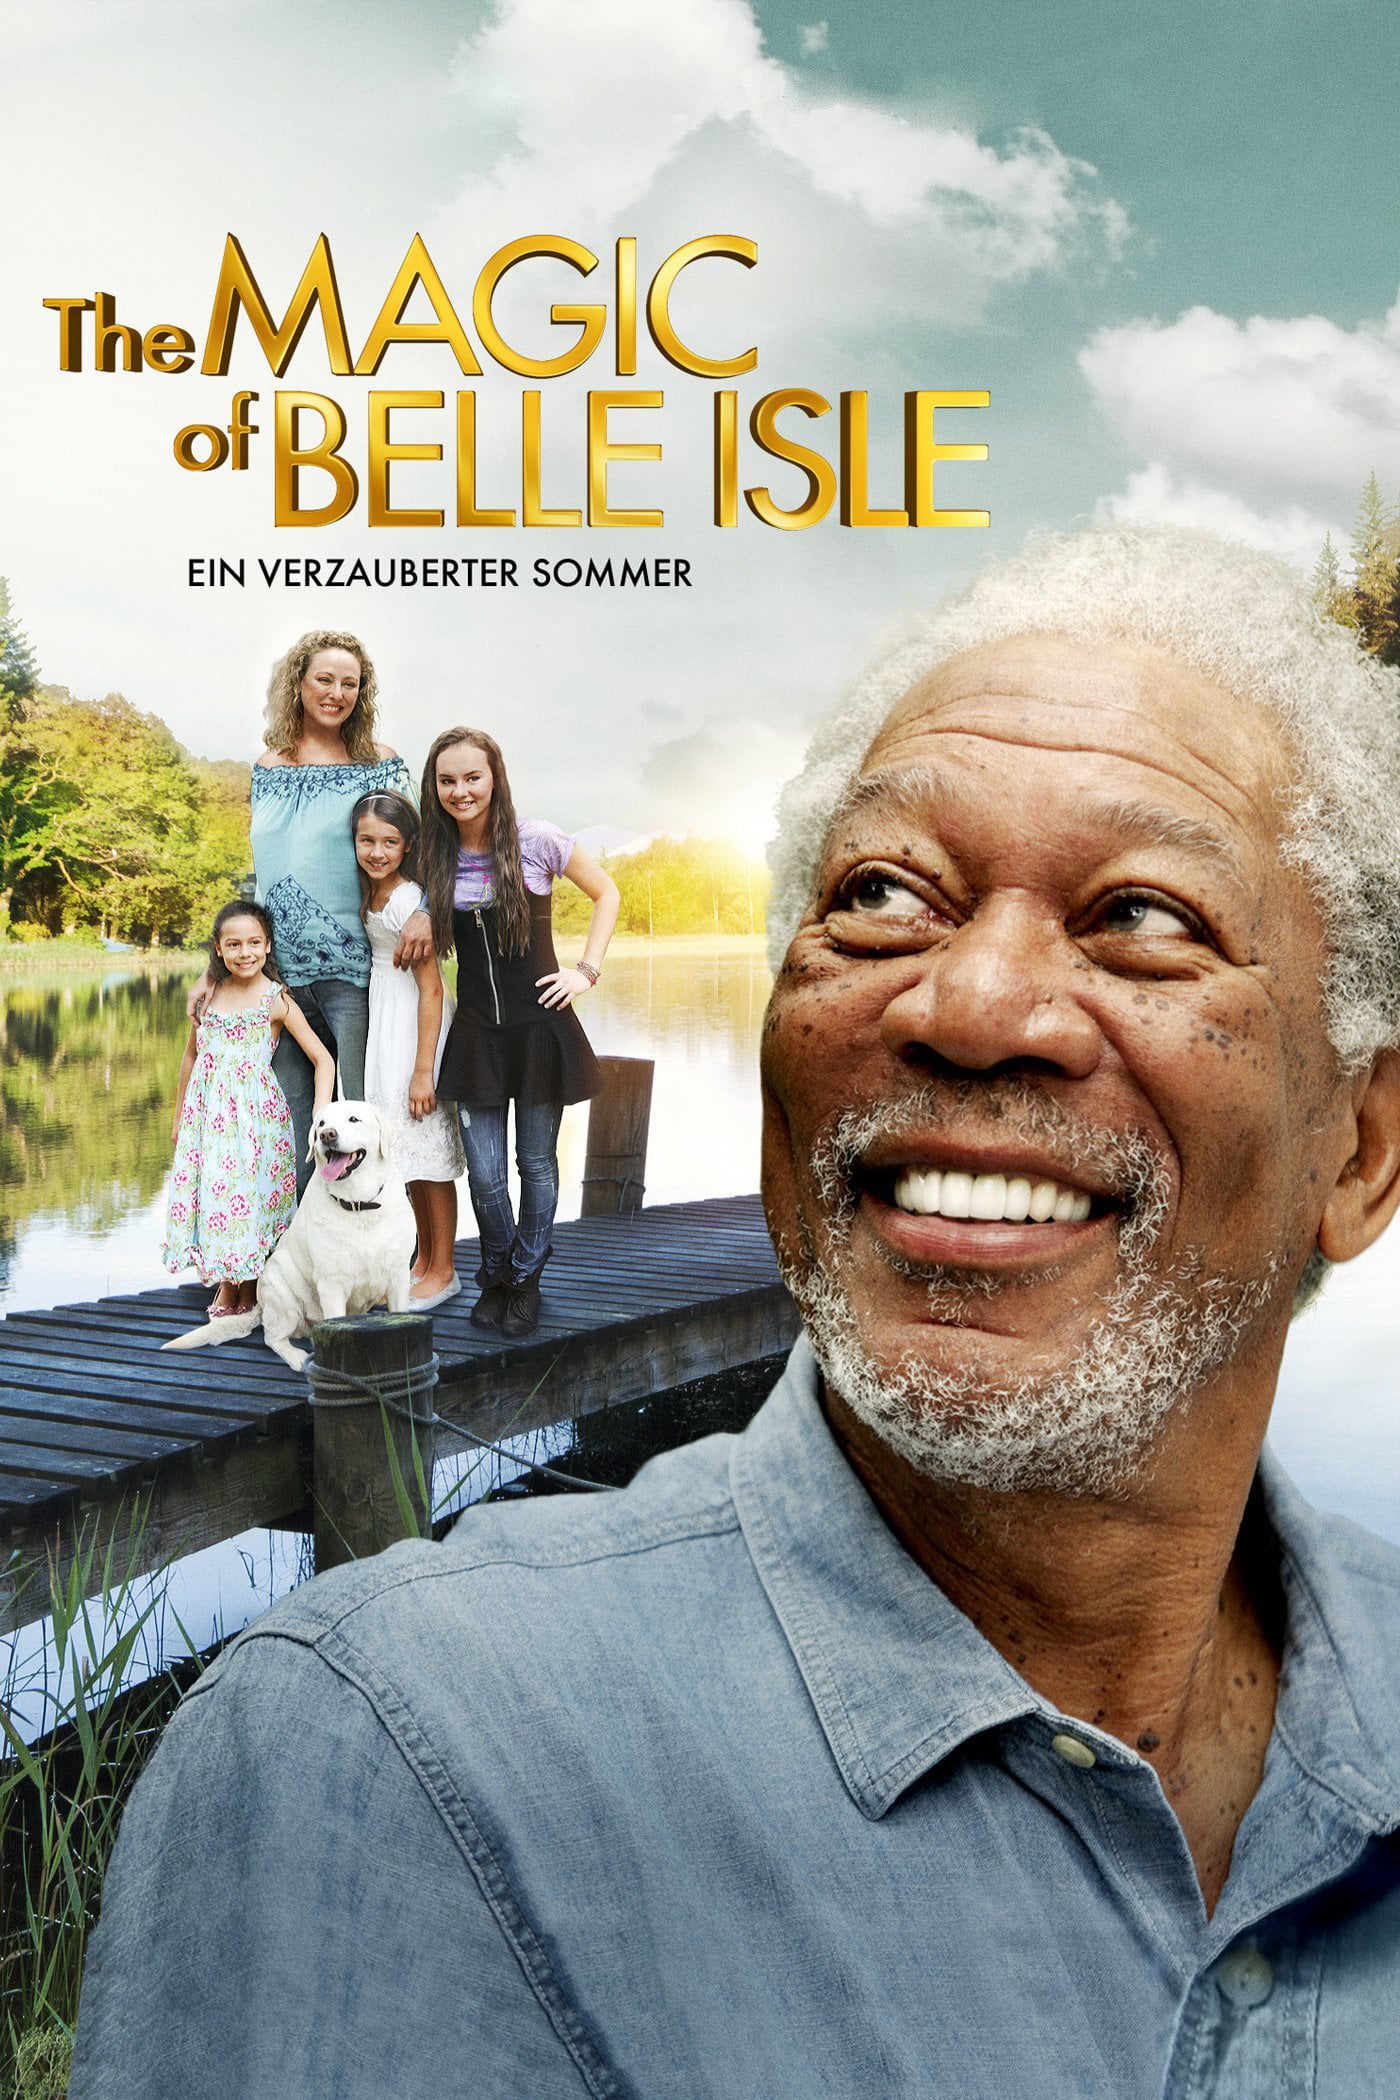 Plakat von "The Magic of Belle Isle - Ein verzauberter Sommer"